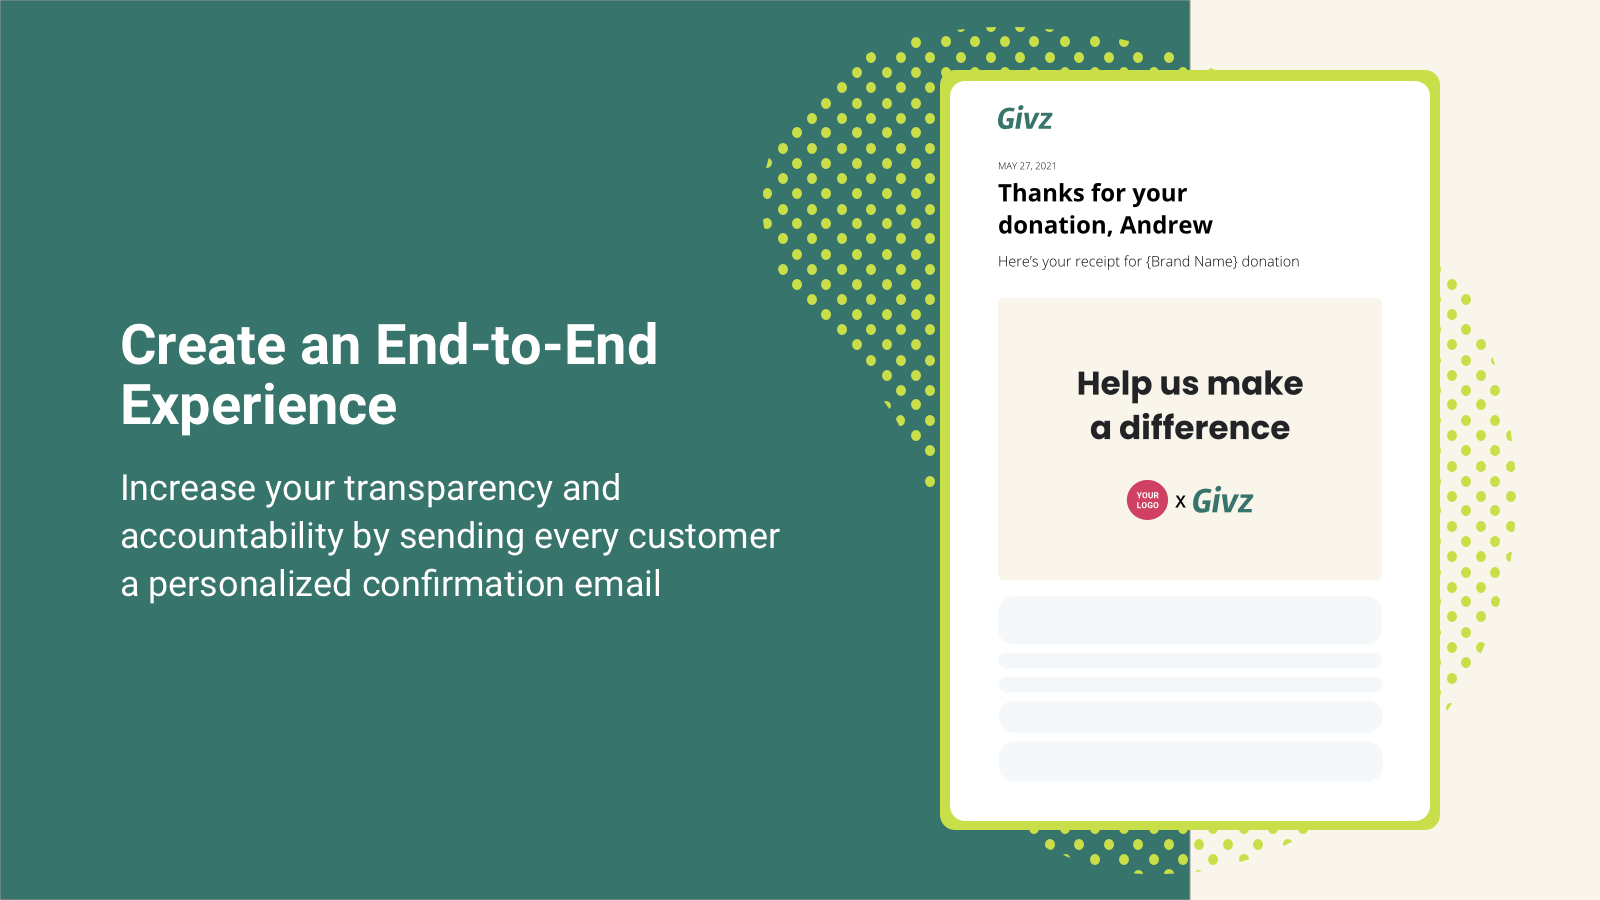 Genera más confianza enviando un recibo de las donaciones por correo electrónico a los compradores